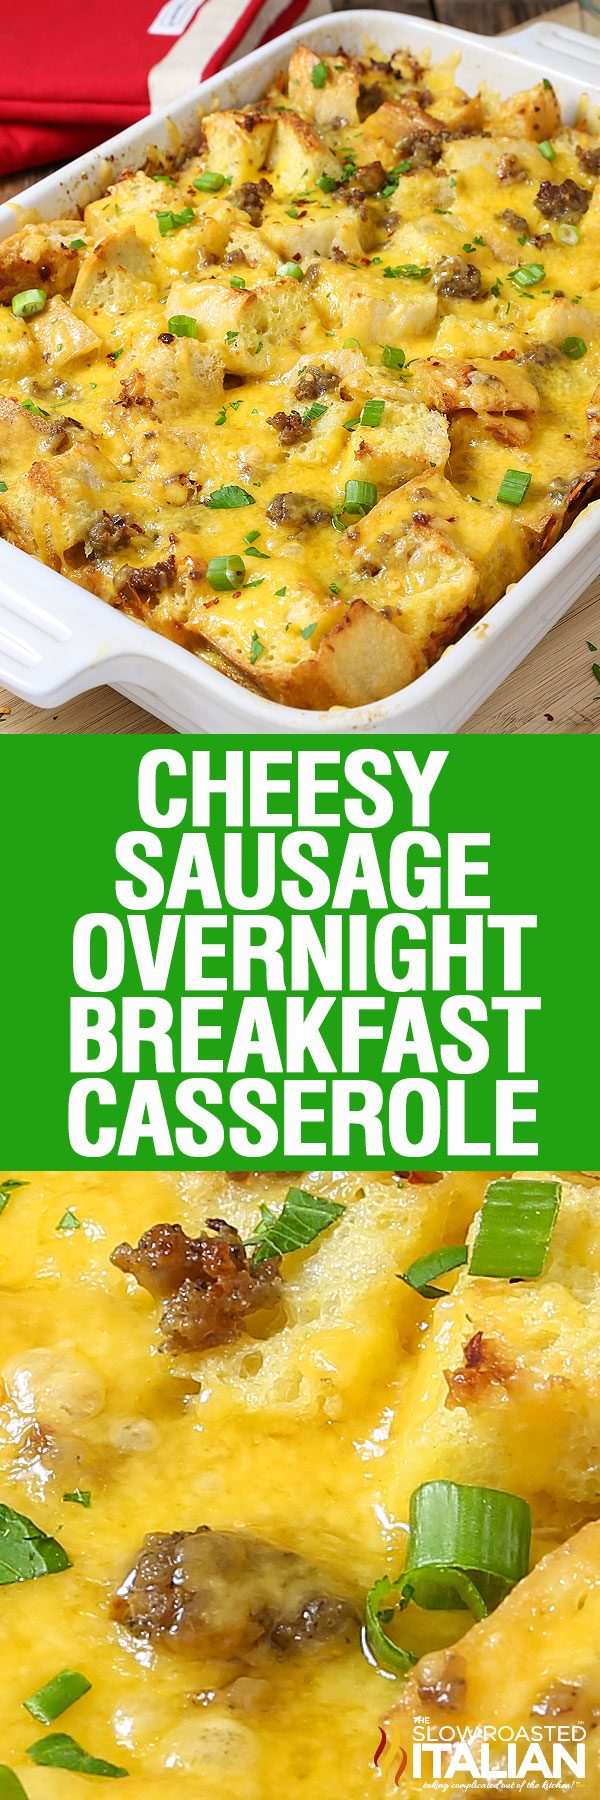 Cheesy Sausage Overnight Breakfast Casserole - The Slow Roasted Italian